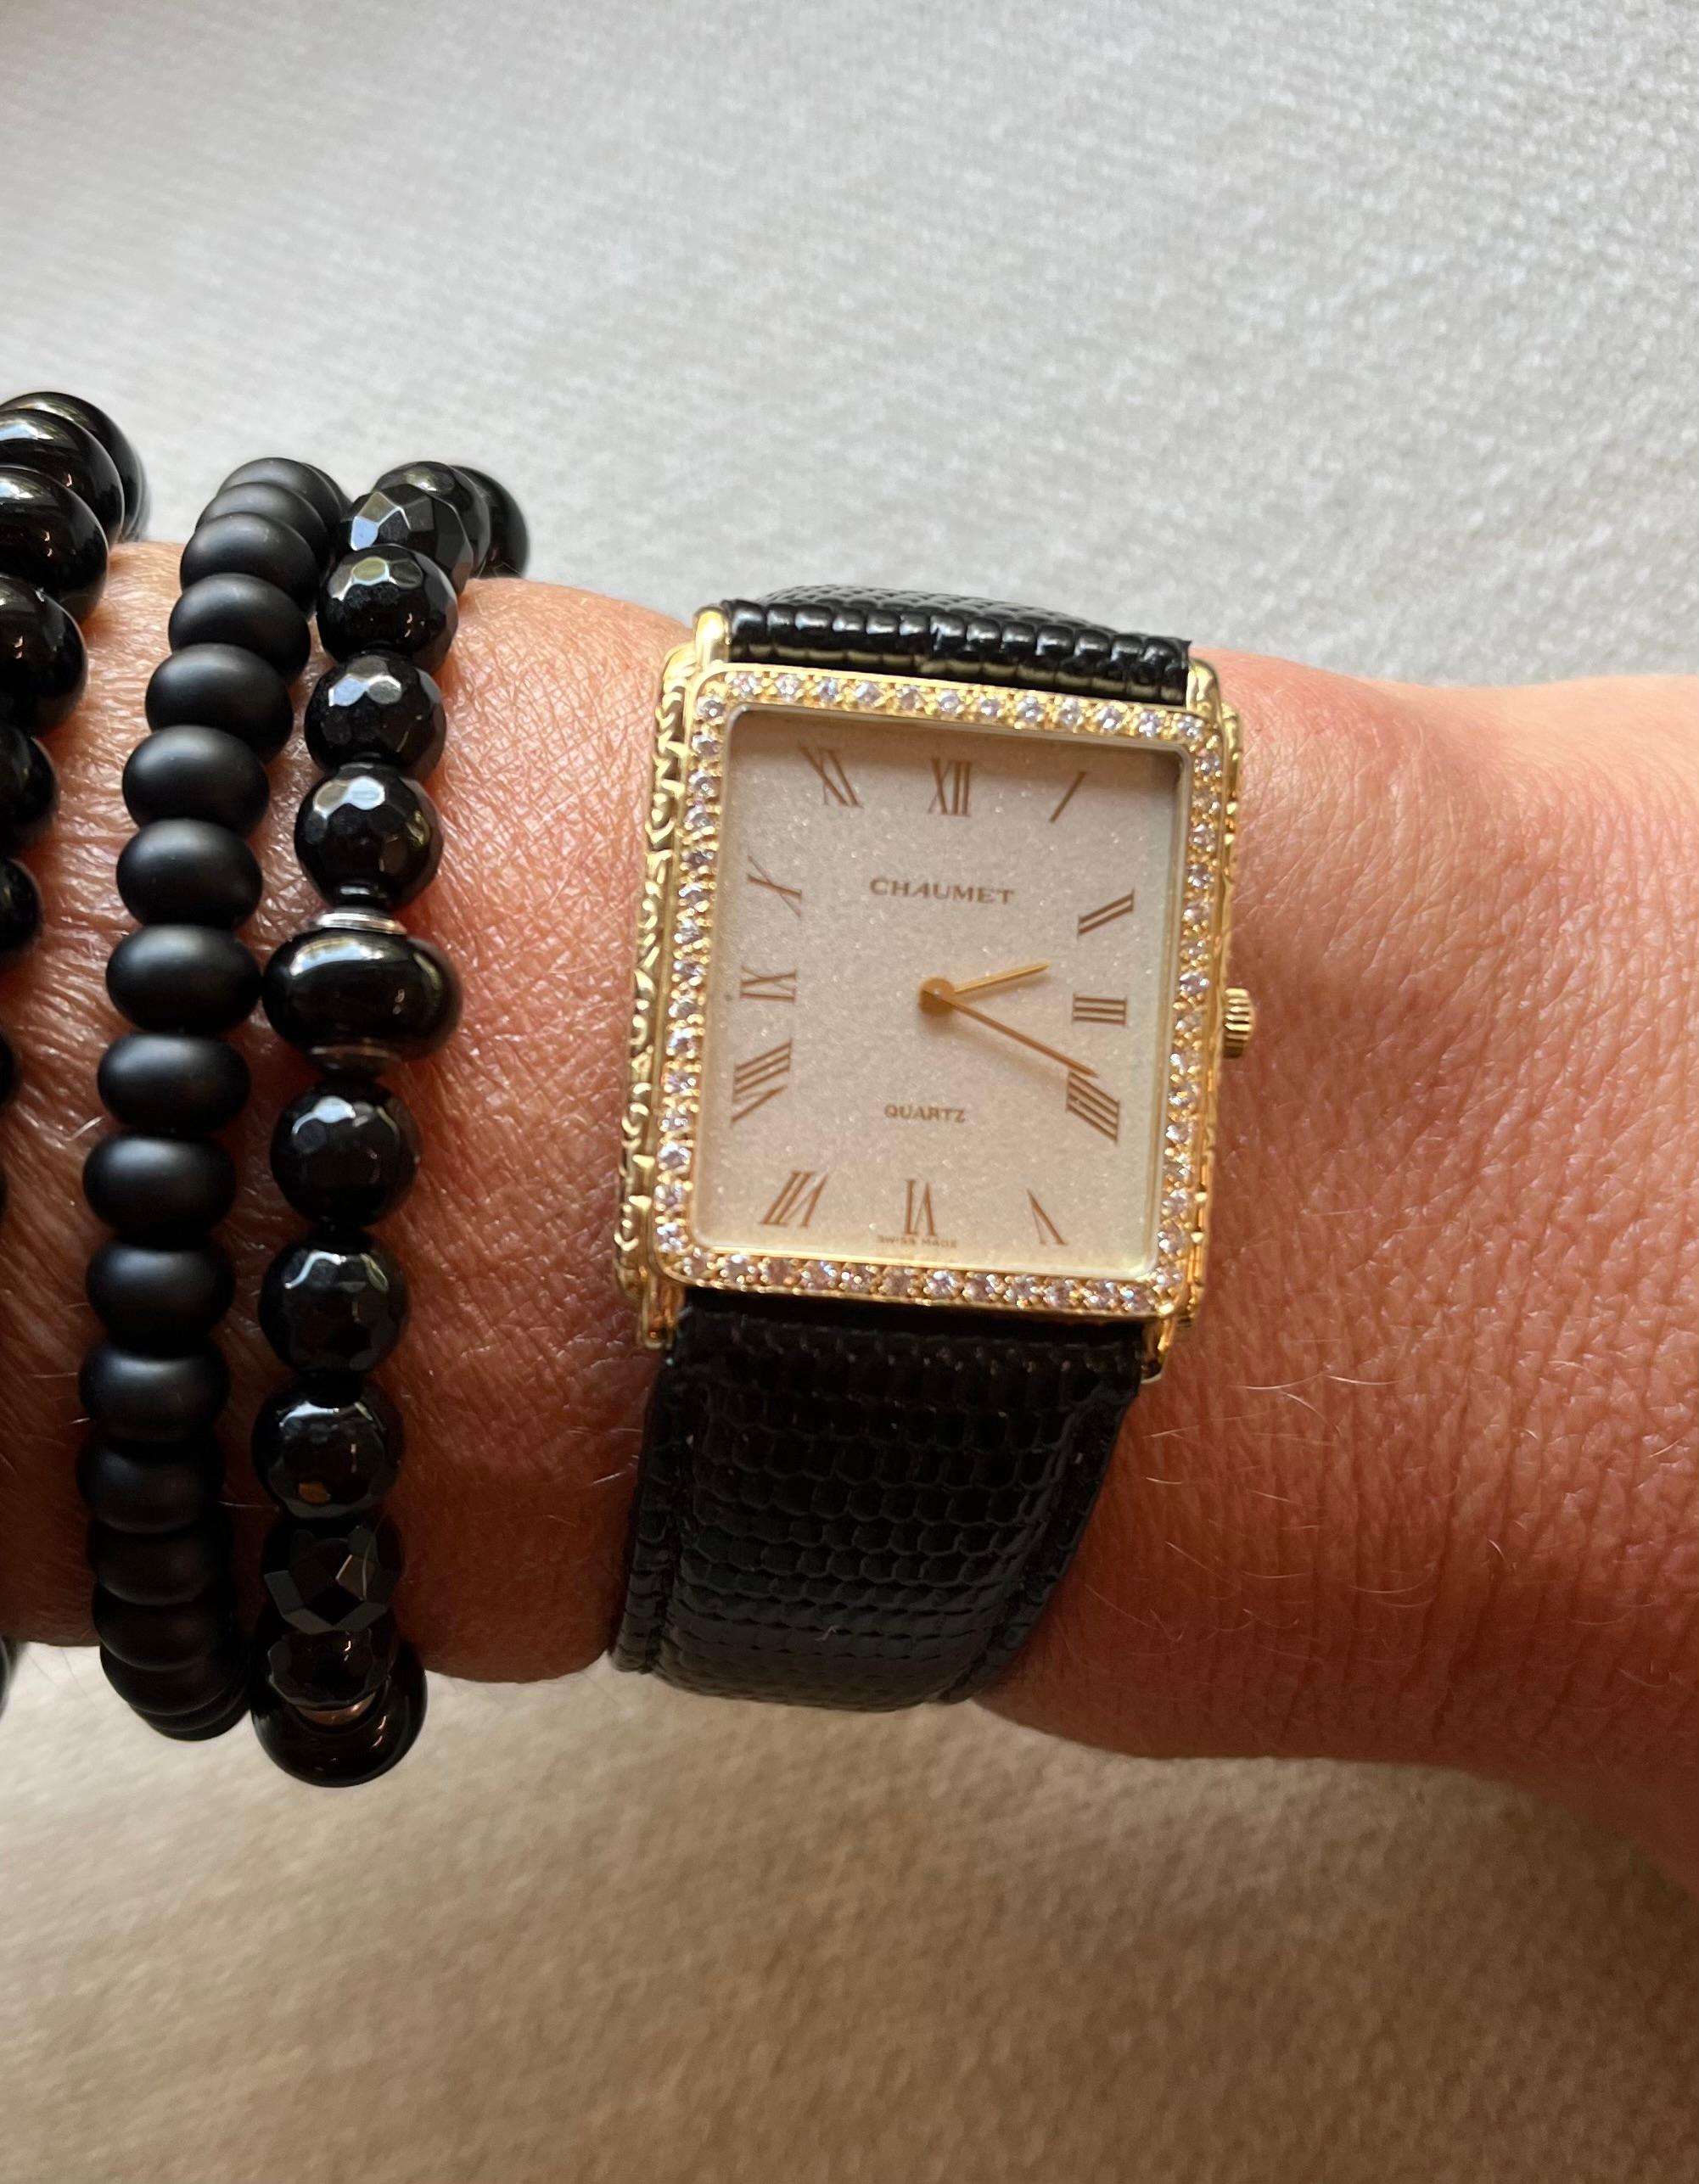 Femenino o masculino Chaumet Reloj de pulsera de cuarzo para señora, oro amarillo de 18 quilates y diamantes en venta